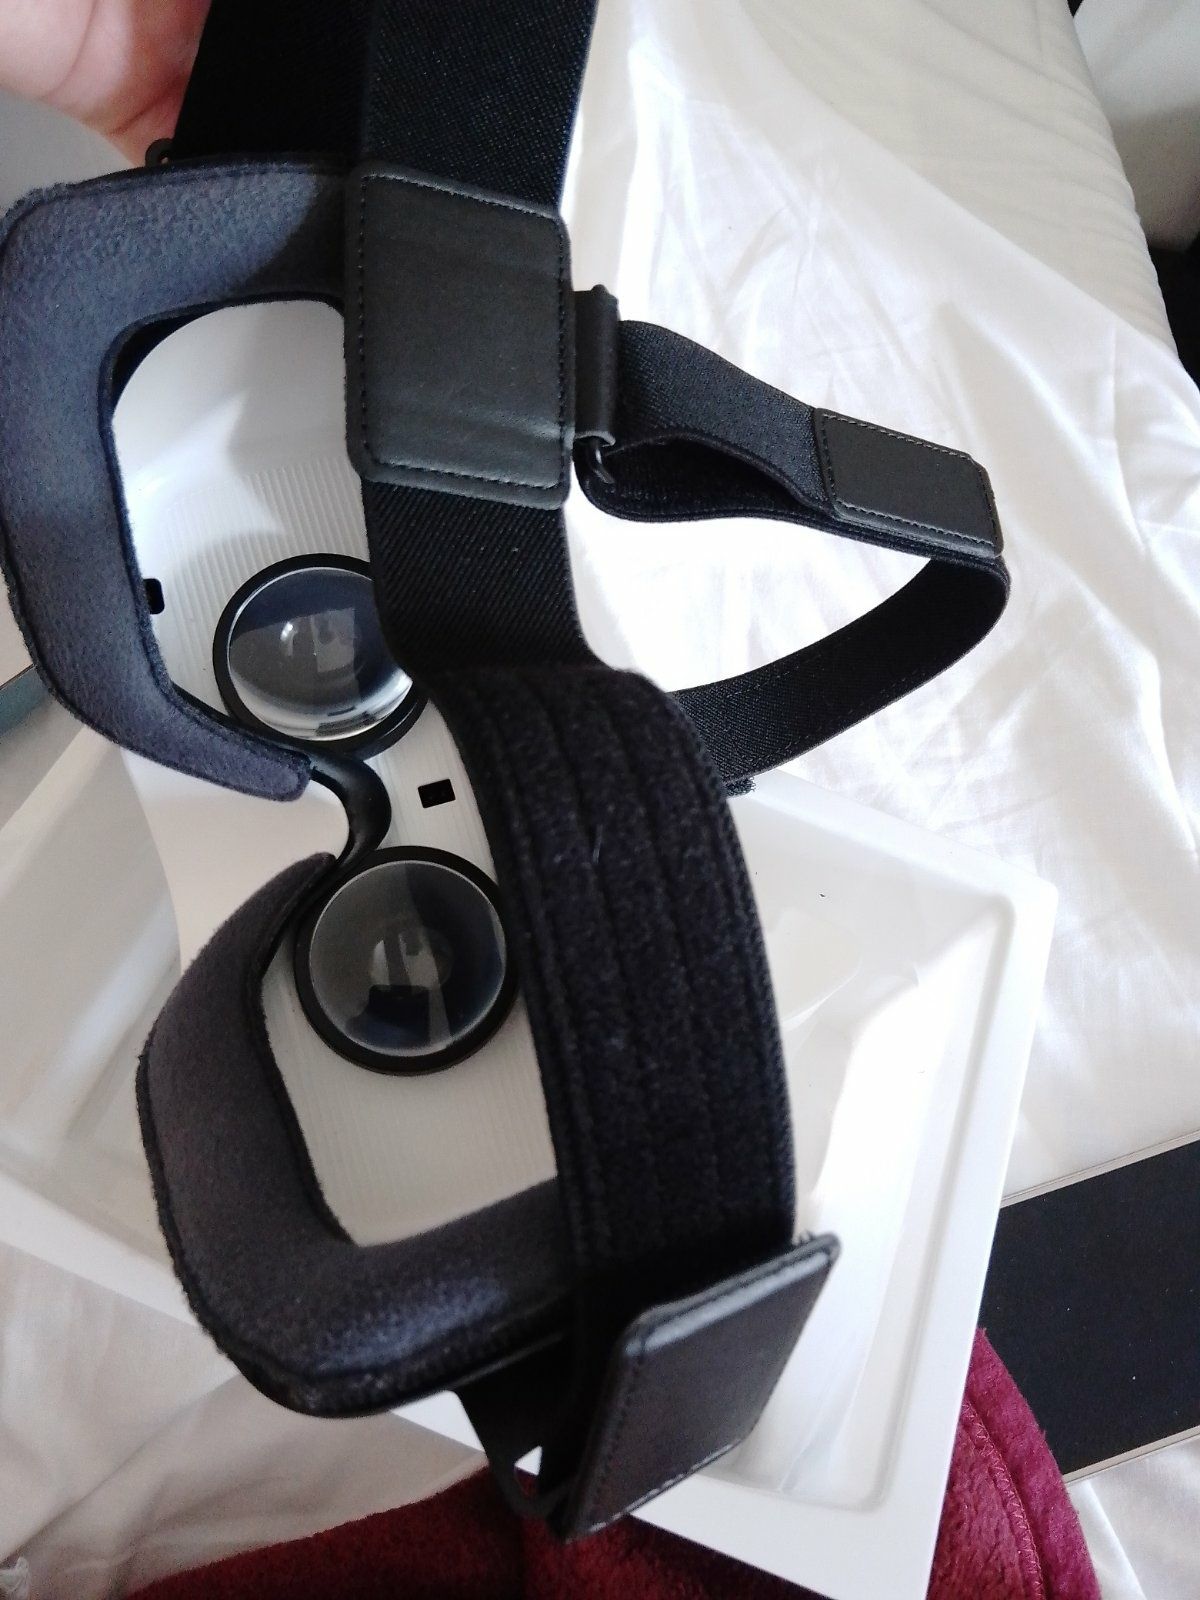 Samsung Gear VR очки виртуальной реальности